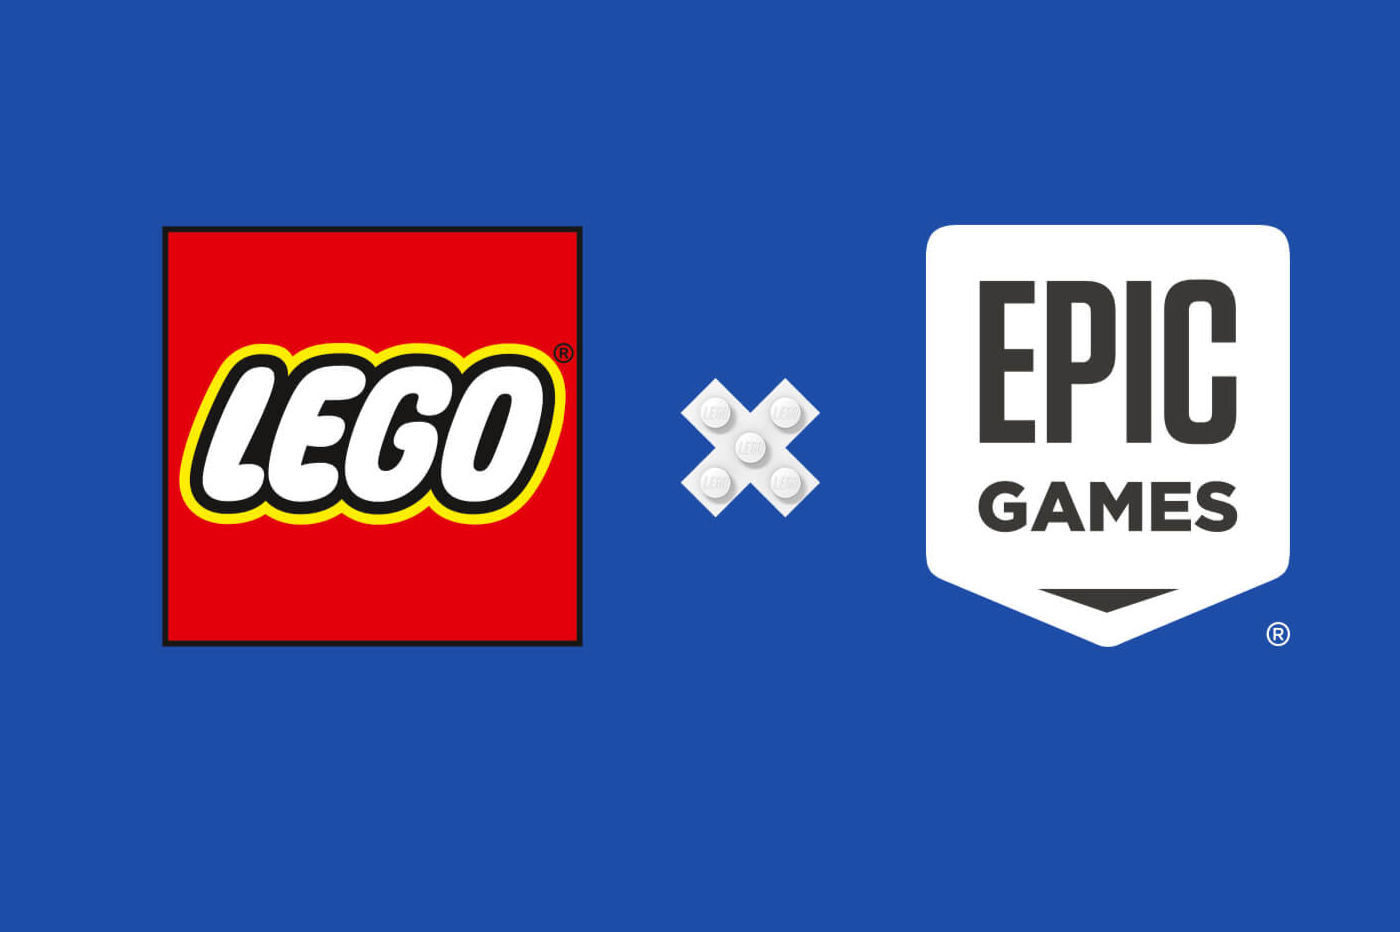 Image d’annonce du partenariat Epic Game et Lego